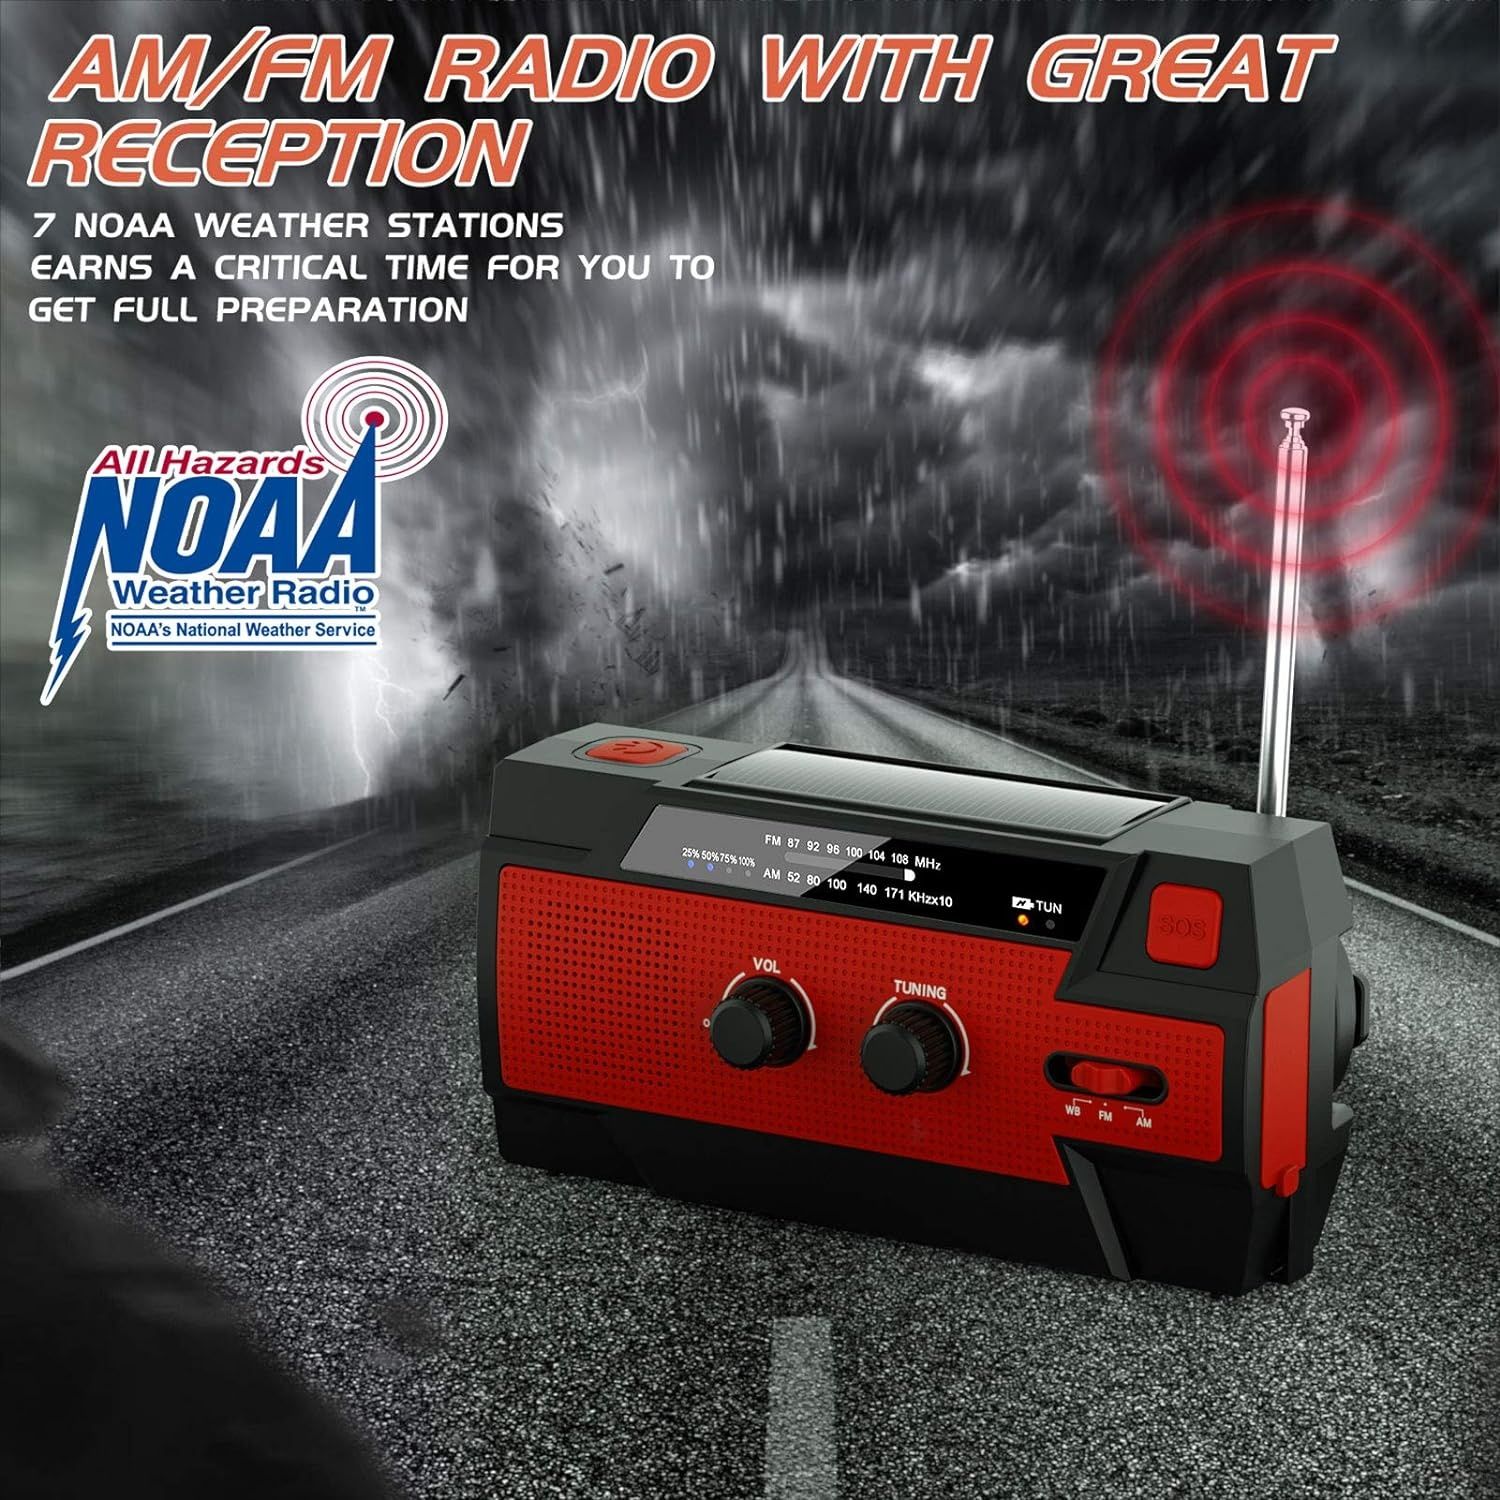 Radio sieciowo- bateryjne solarne AM, FM Yikanwen MD-090P
Radio siecio